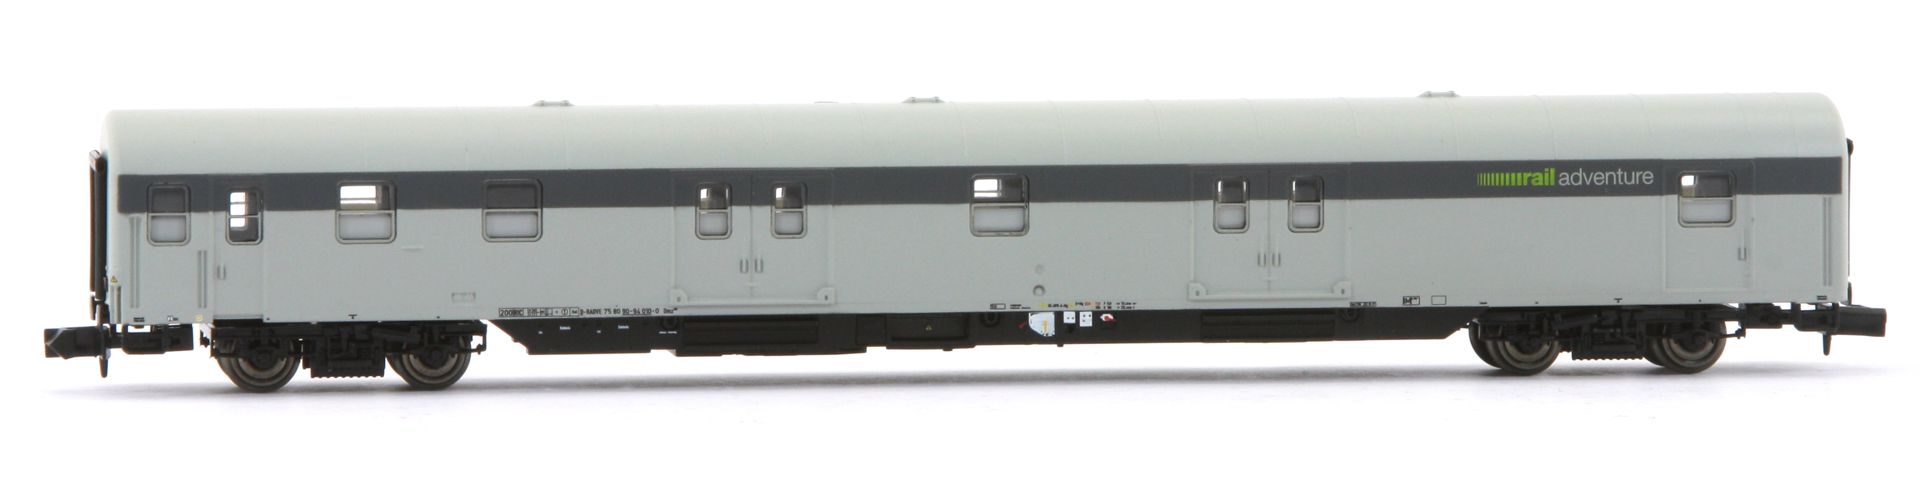 Arnold HN4419 - 2er Set Kuppelwagen, ex Post-mrz, RailAdventure, Ep.VI